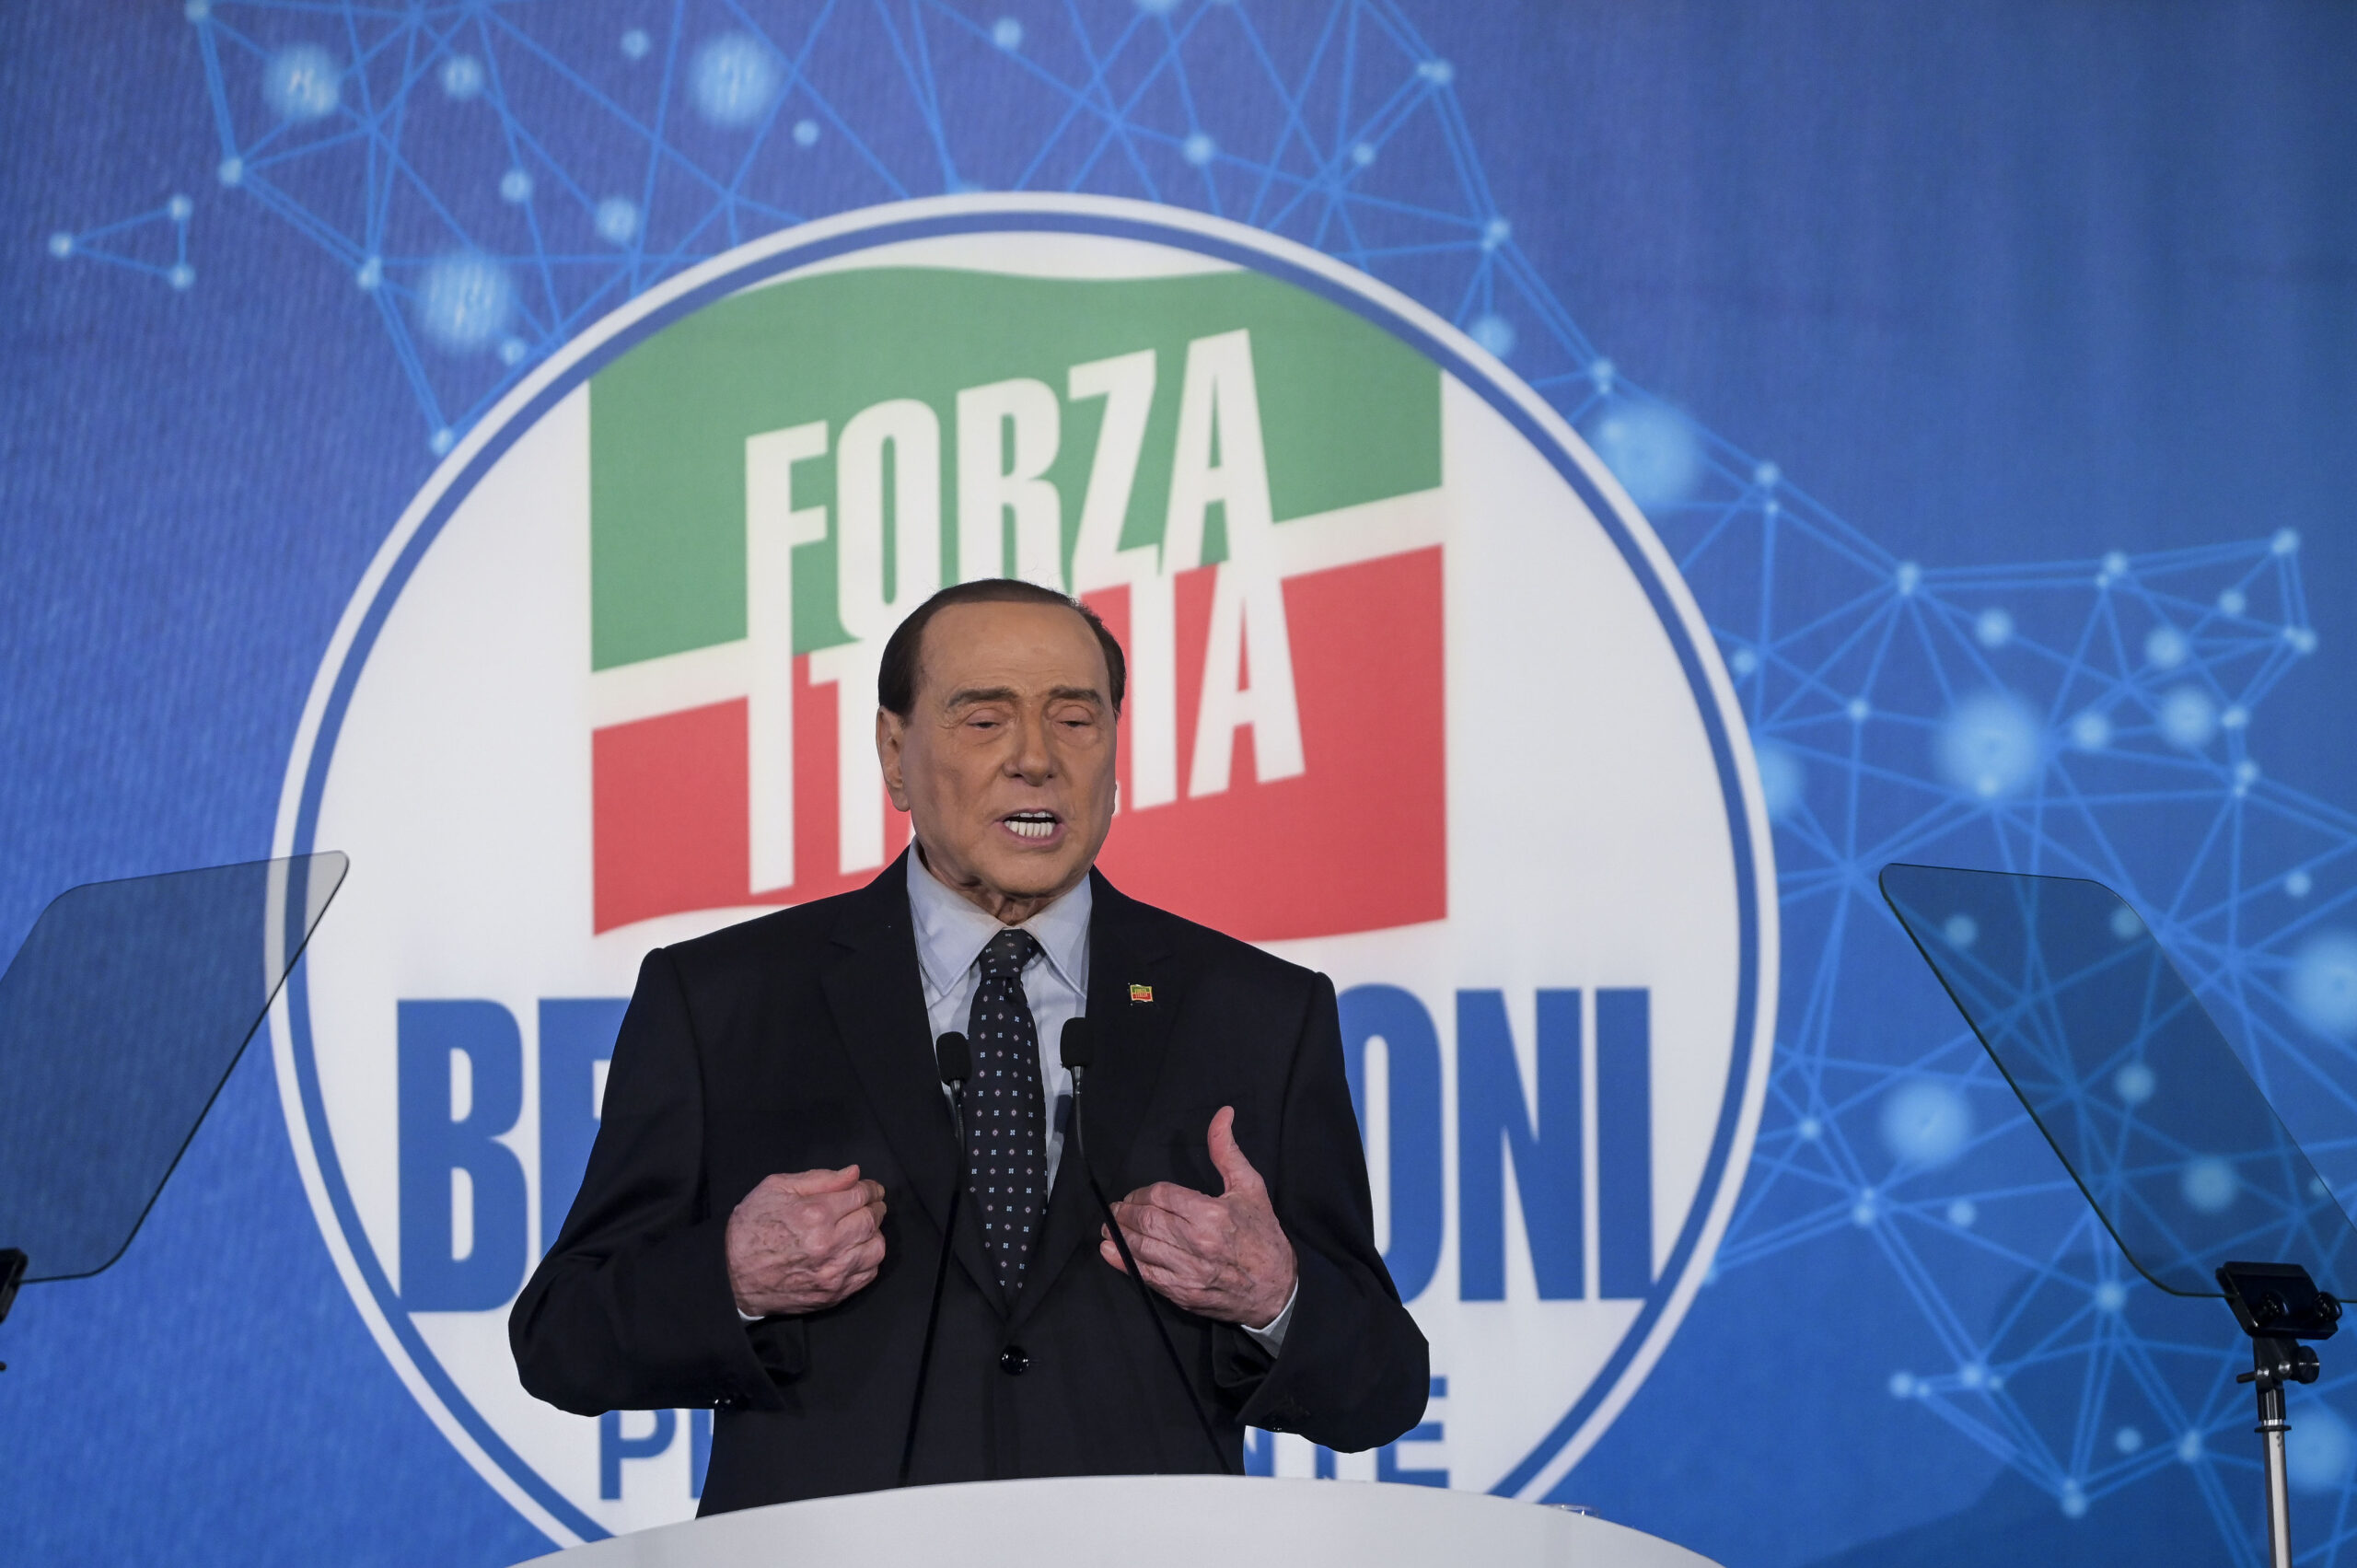 Berlusconi non prende posizione nella sfida tra i due leader di destra: "Evitiamo lo scostamento, anche se..."